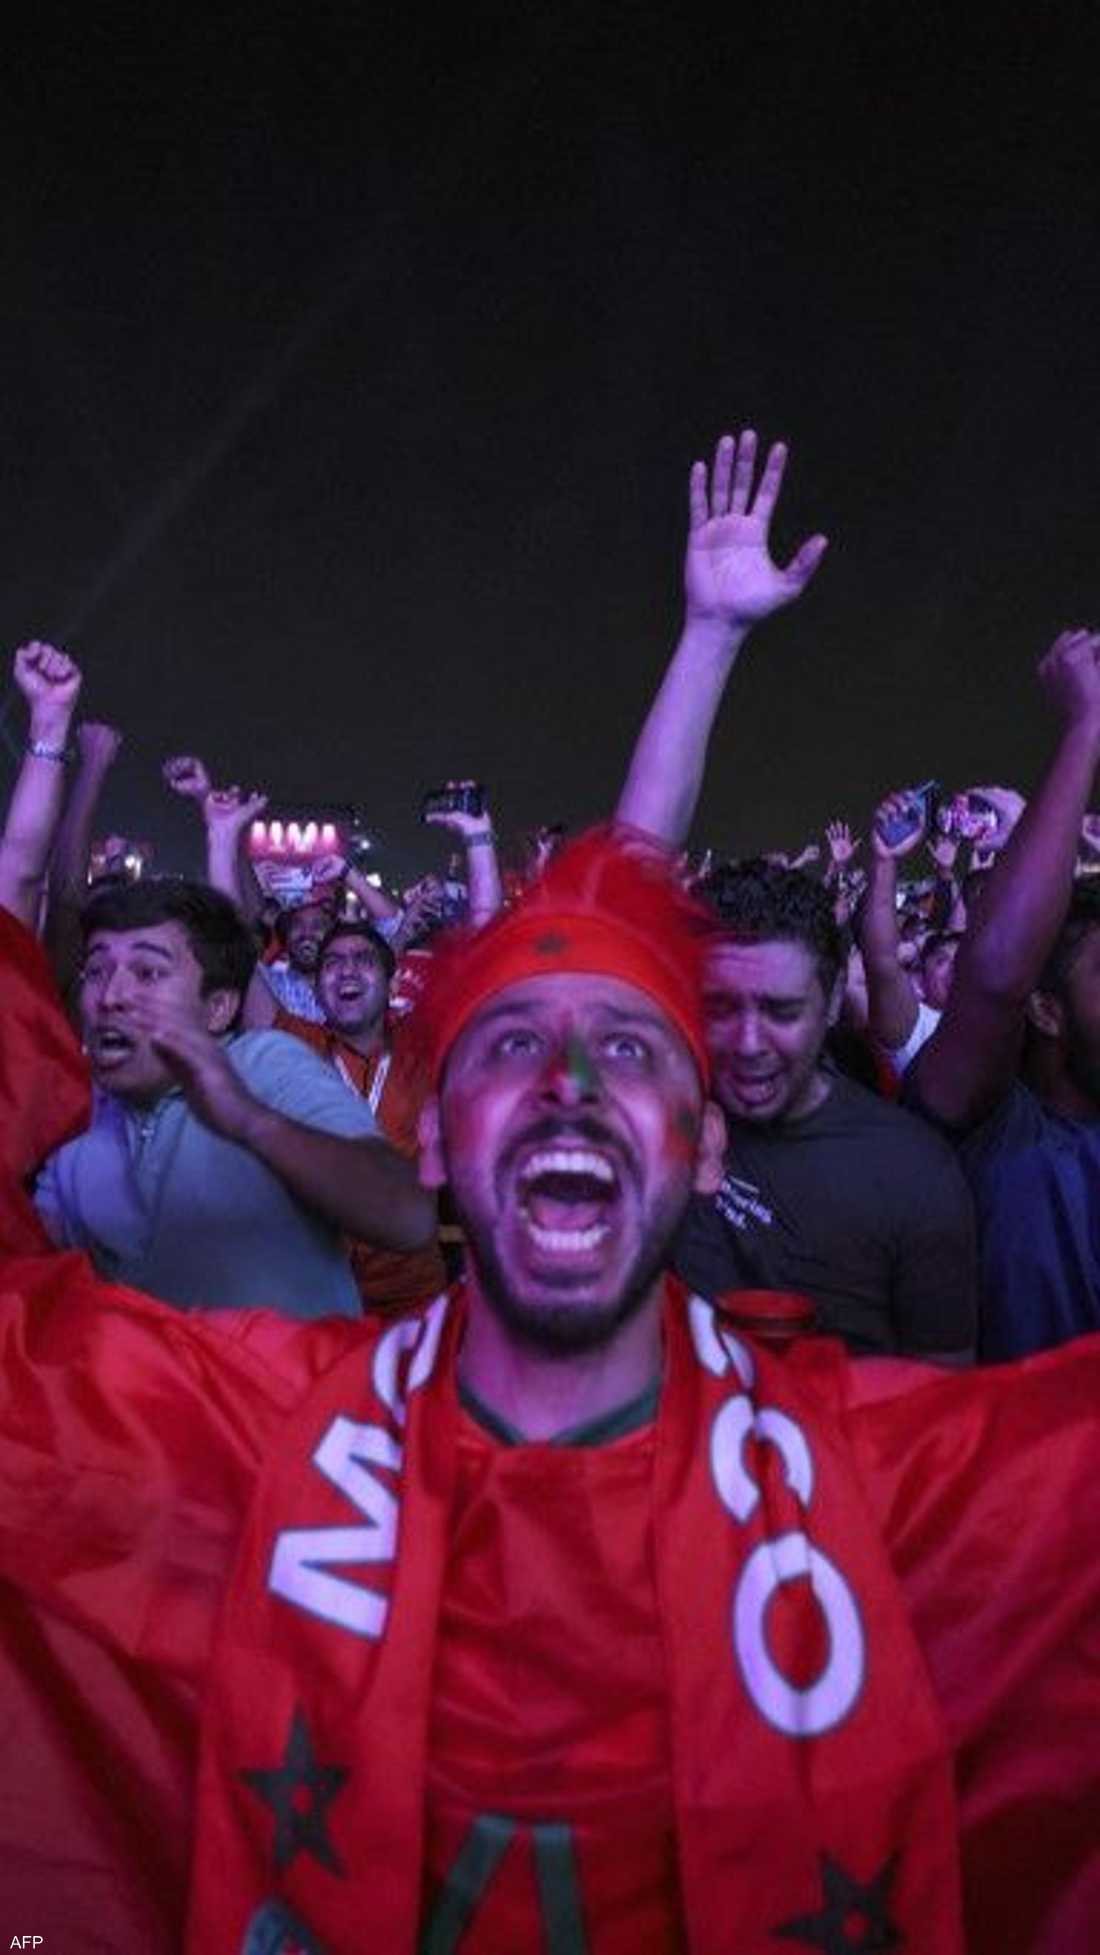 احتفل المغاربة بفوز منتخبهم التاريخي على إسبانيا الثلاثاء